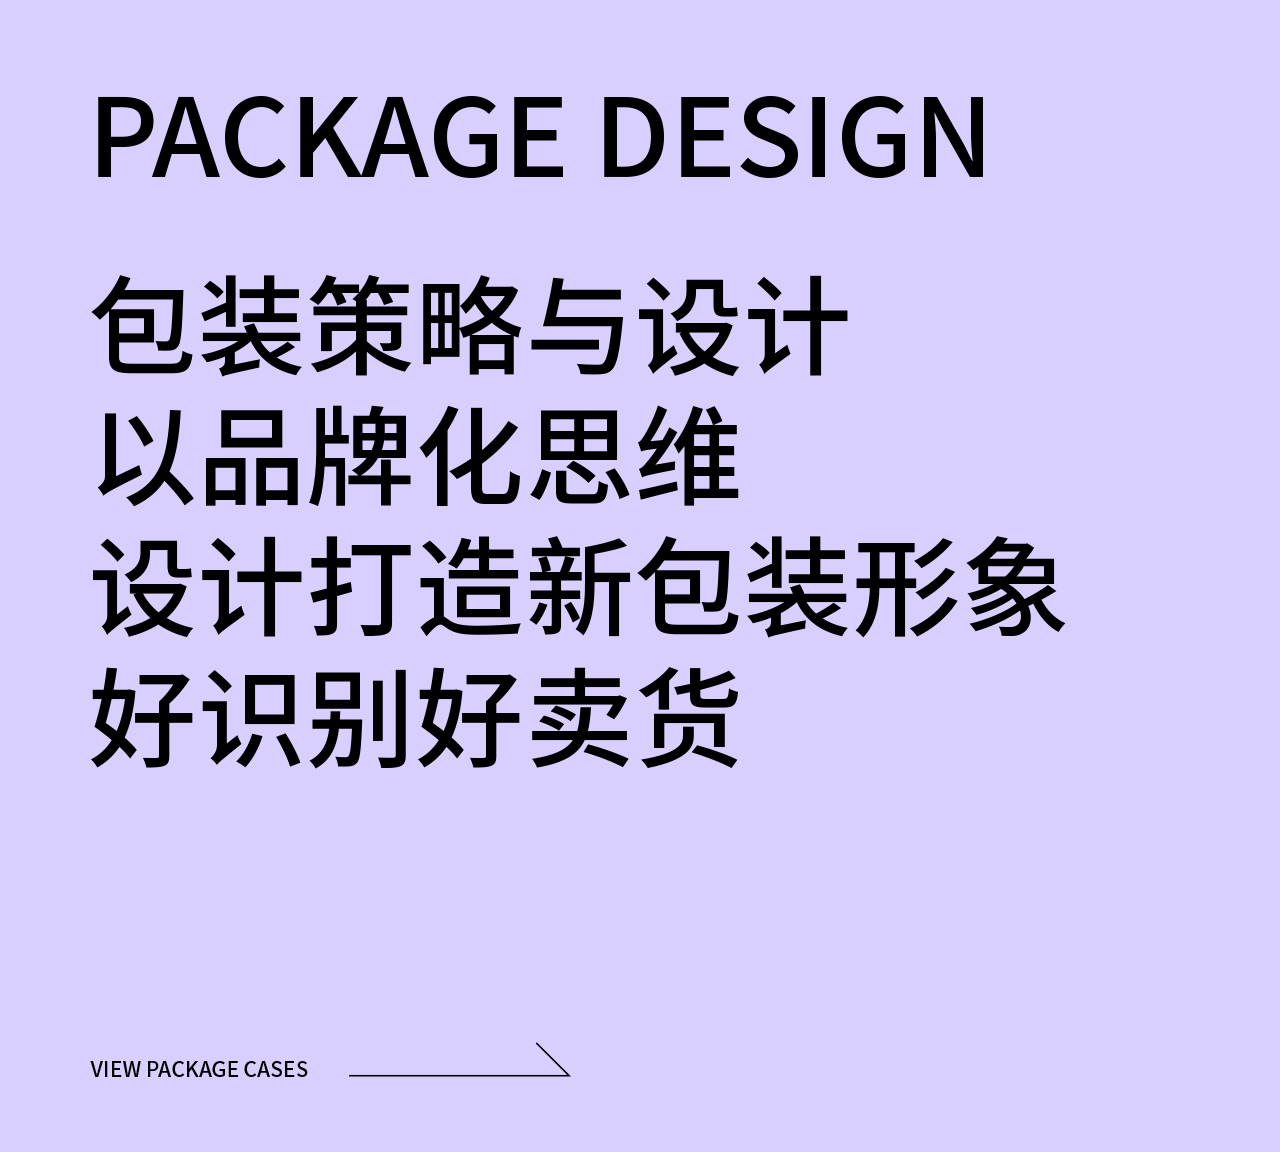 包装设计策略与定位包装卖点及文案提炼包装主视觉创意设计包装造型创新设计包装制作落地跟踪